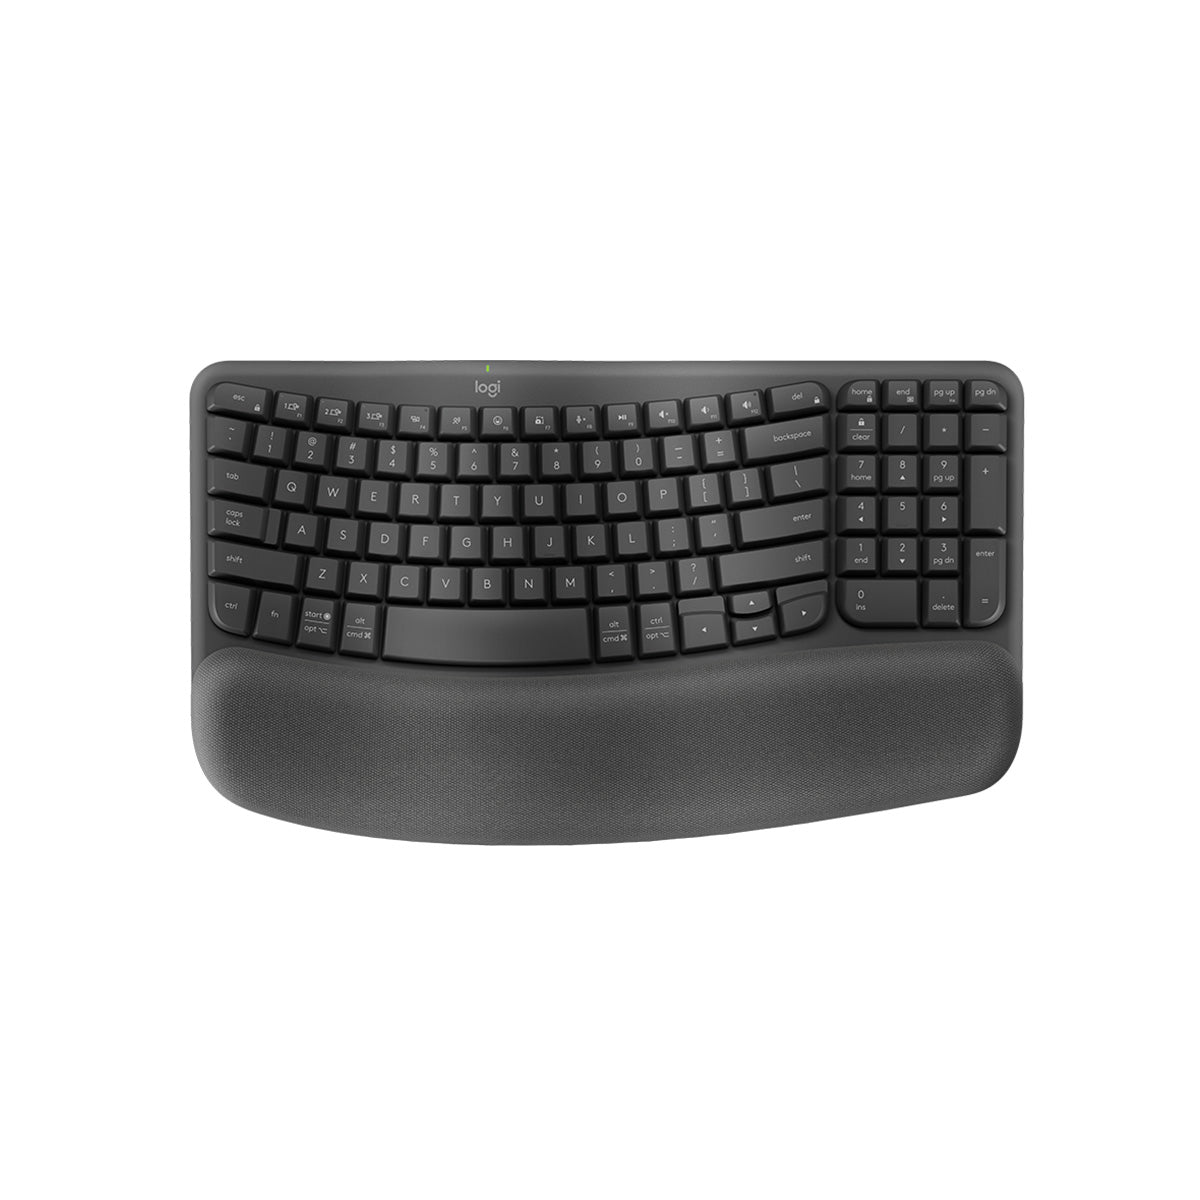 WAVE KEYS Wireless Keyboard